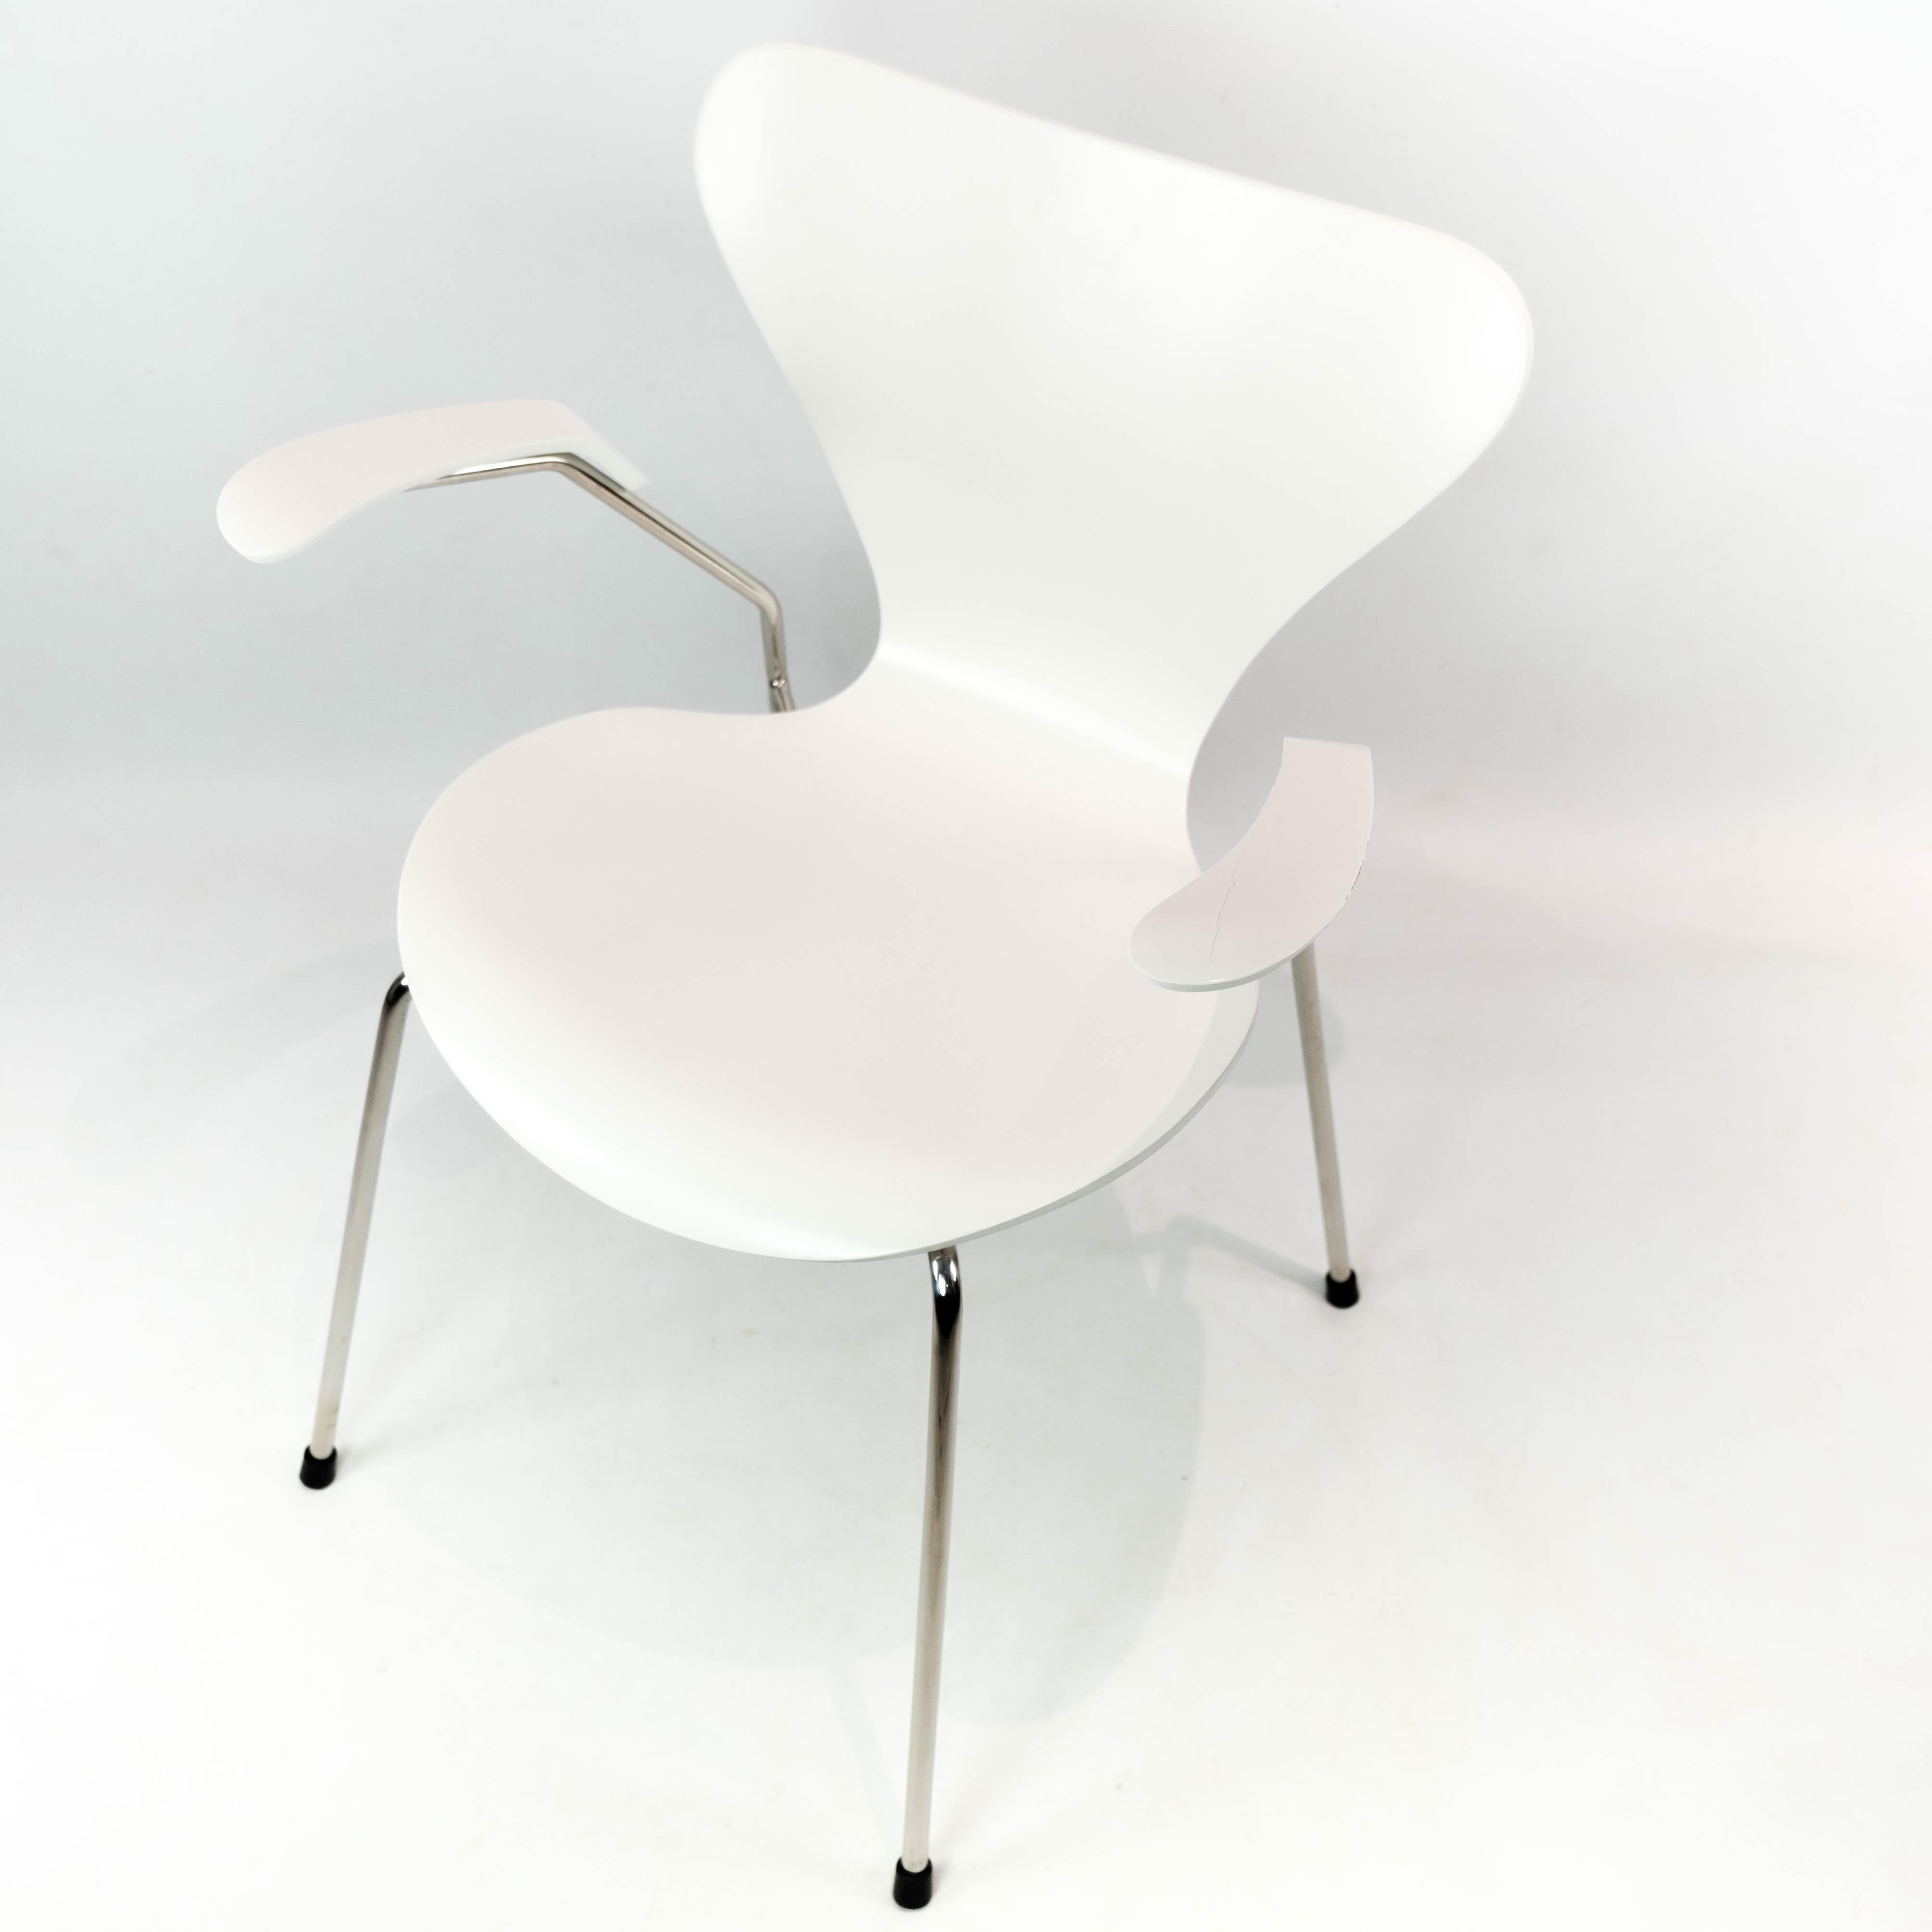 Weißer Stuhl Seven, Modell 3207, mit Armlehnen, entworfen von Arne Jacobsen im Jahr 1955 und hergestellt von Fritz Hansen. Der Stuhl ist in einem sehr guten Vintage-Zustand.